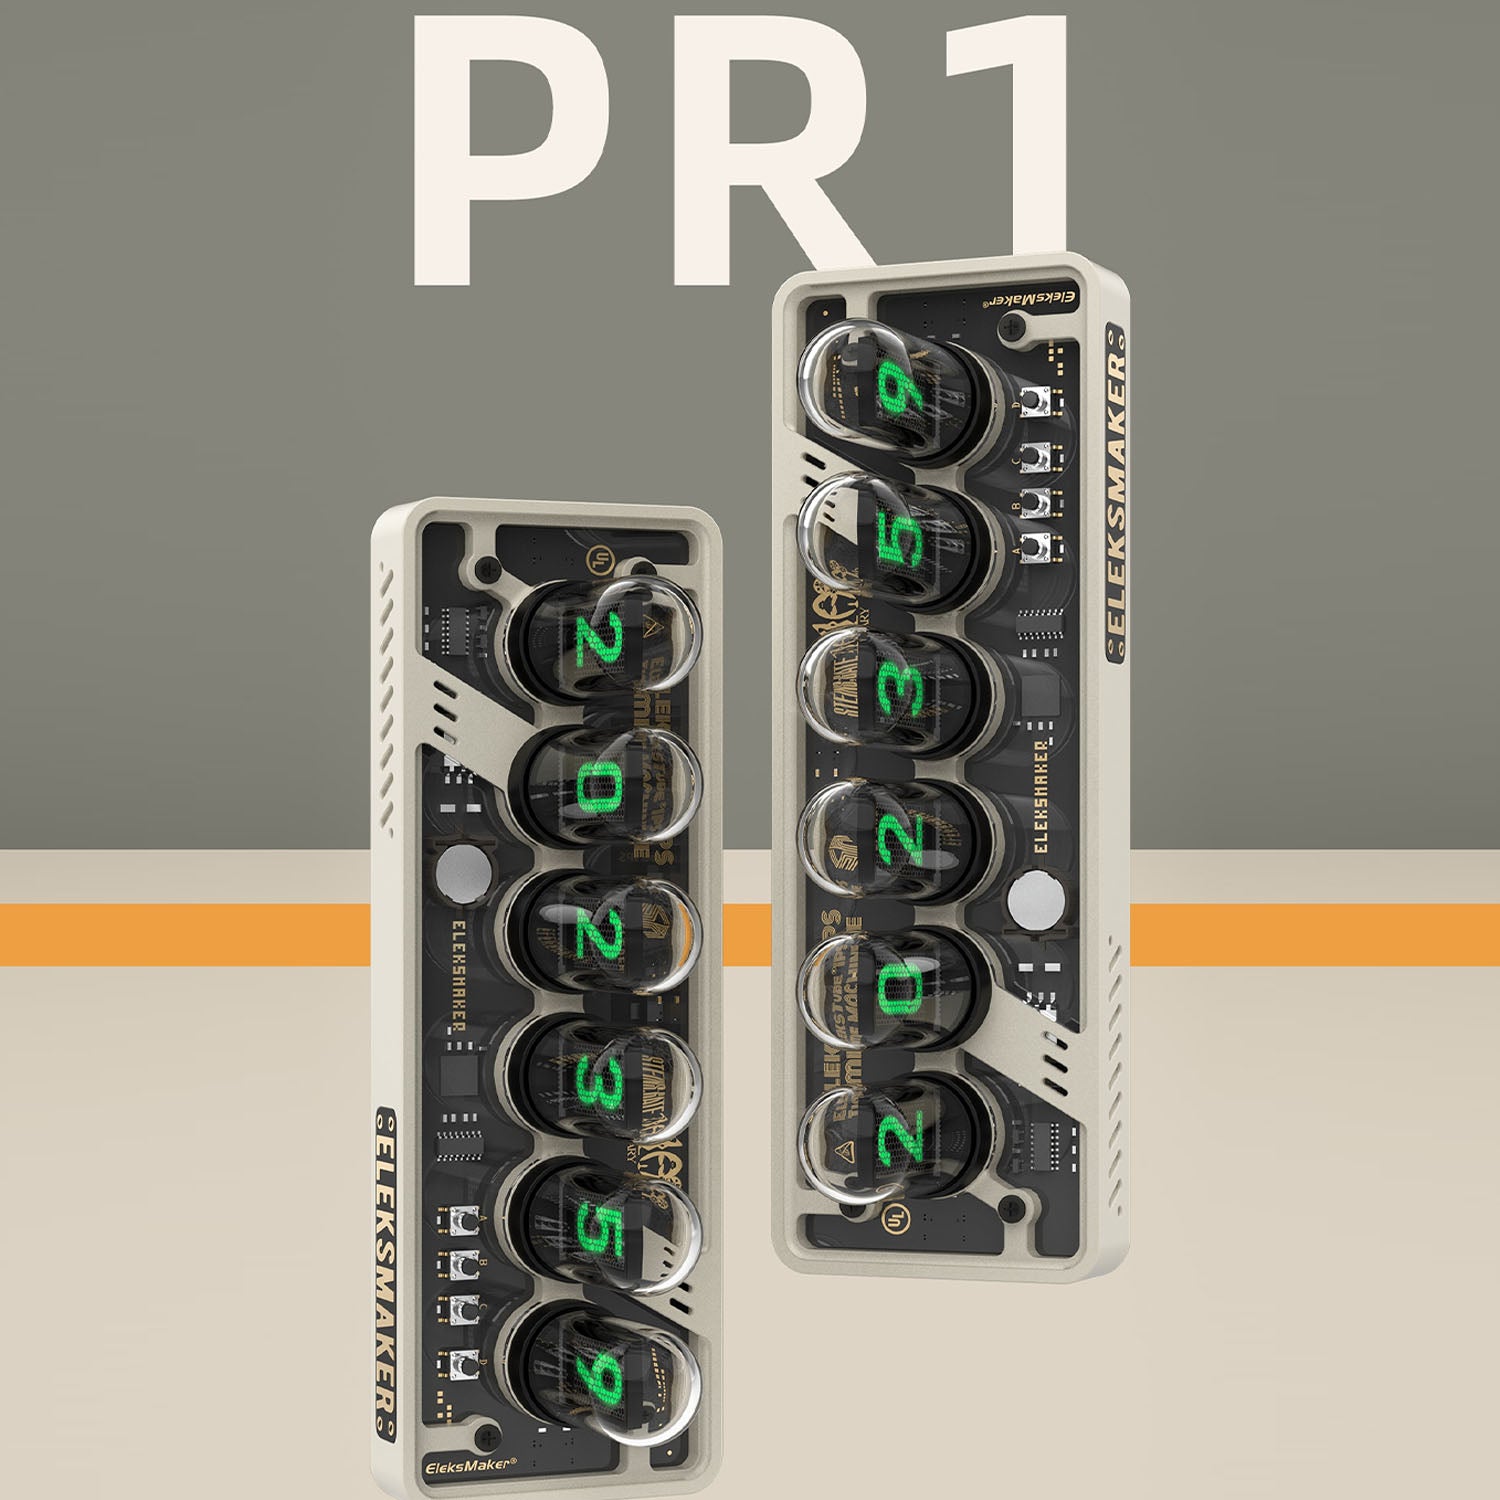 EleksTube IPS PR1 - Pepper White Edition